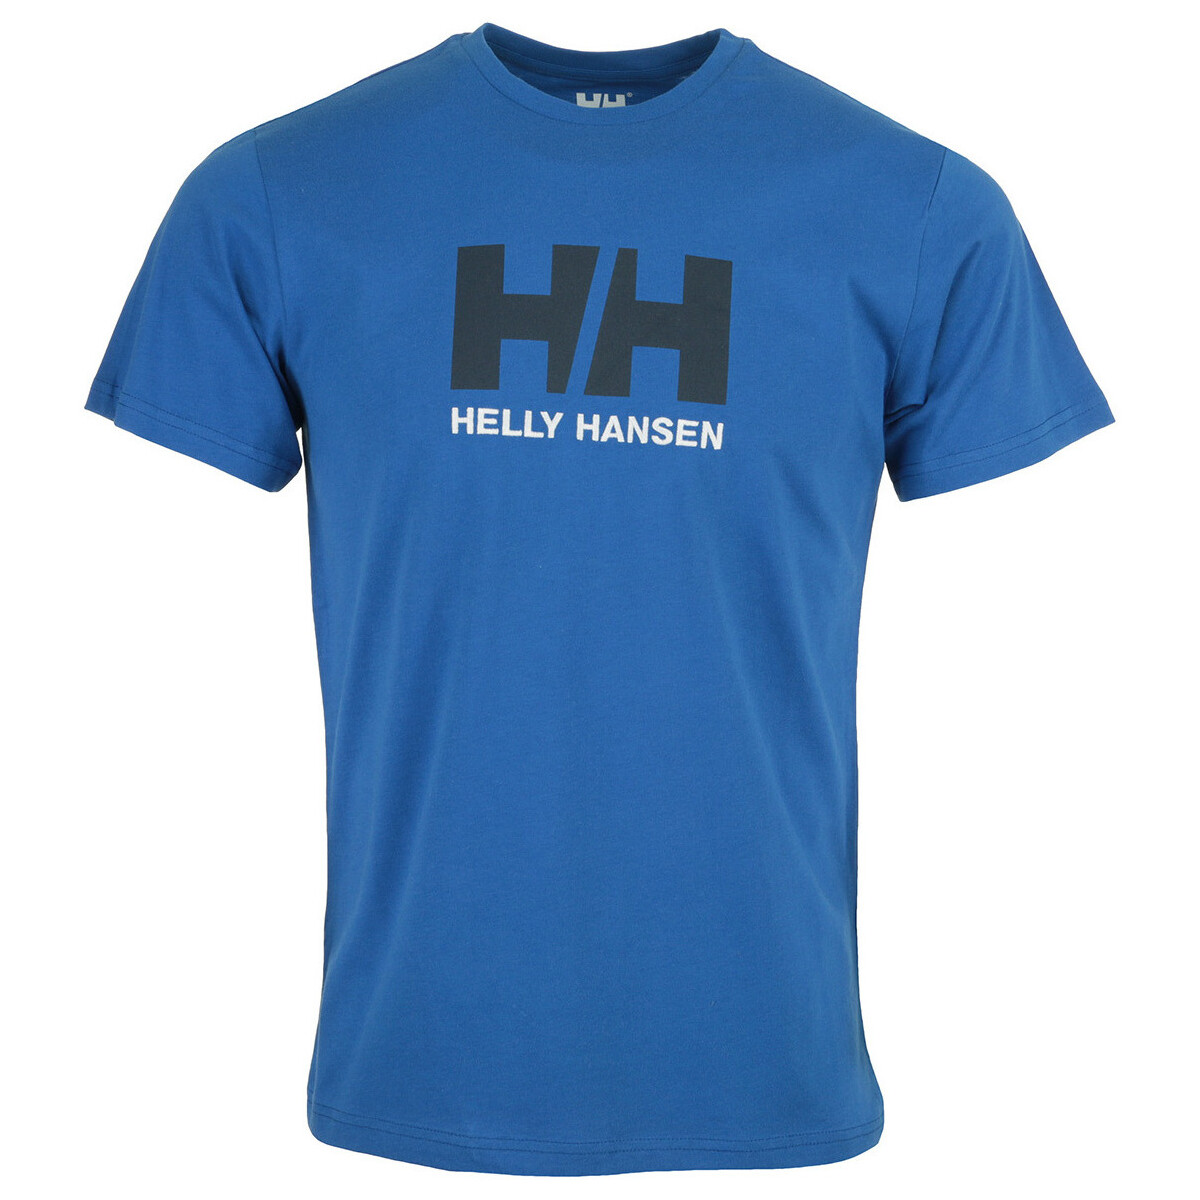 tekstylia Męskie T-shirty z krótkim rękawem Helly Hansen HH Logo T-Shirt Niebieski